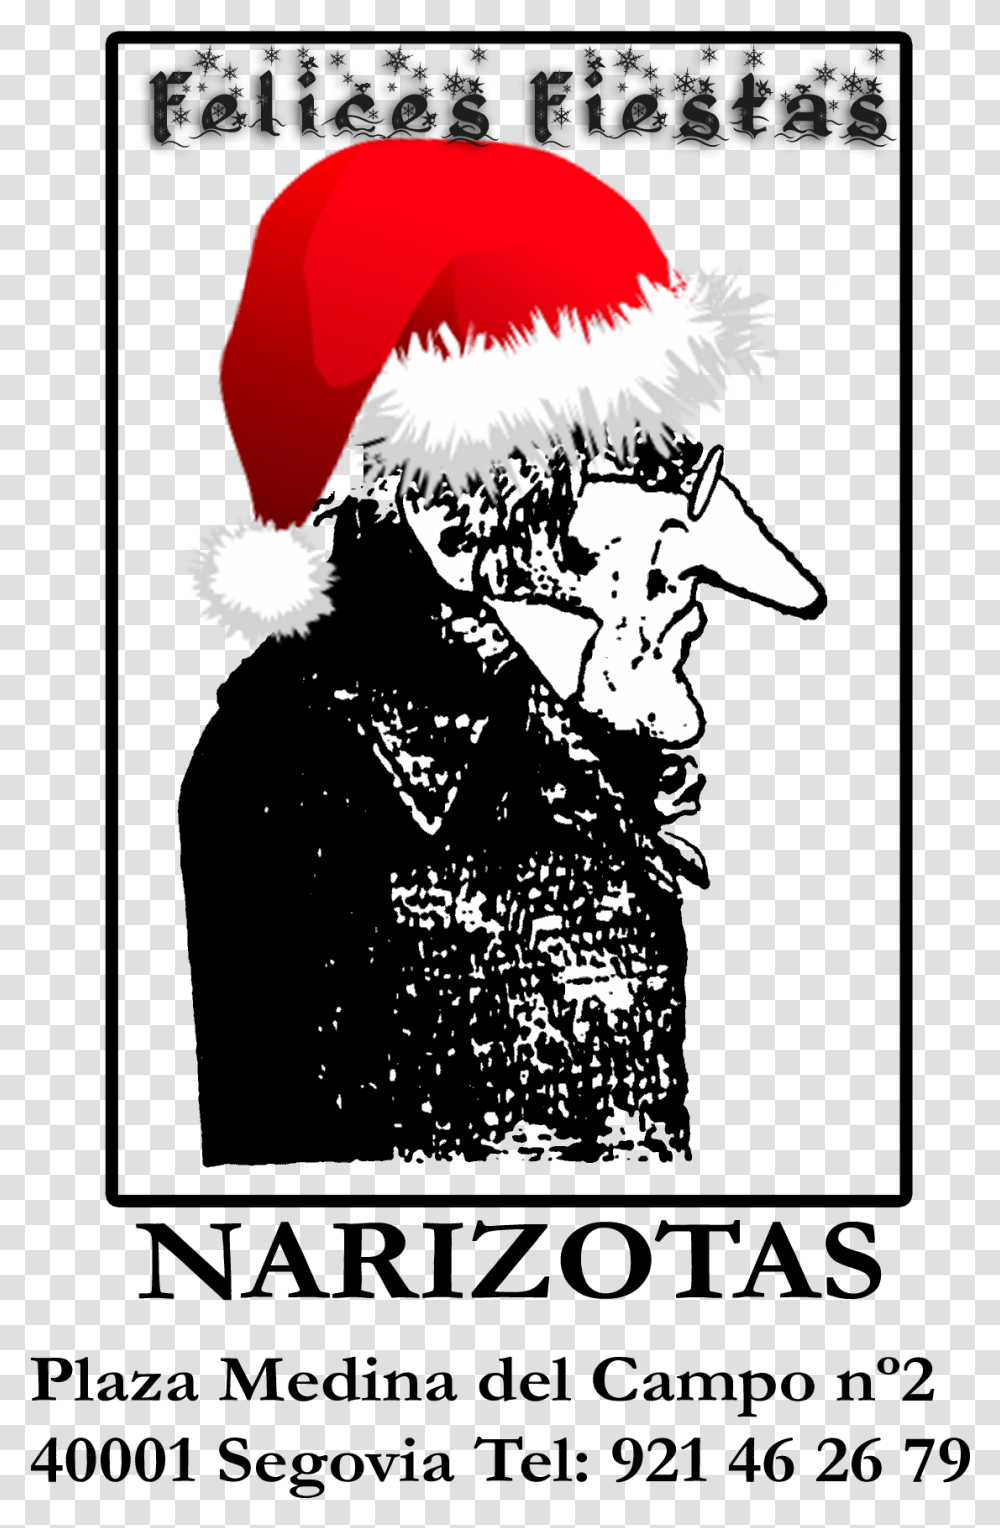 El Narizotas Os Desea Unas Muy Felices Fiestas Santa Hat, Poster, Advertisement Transparent Png